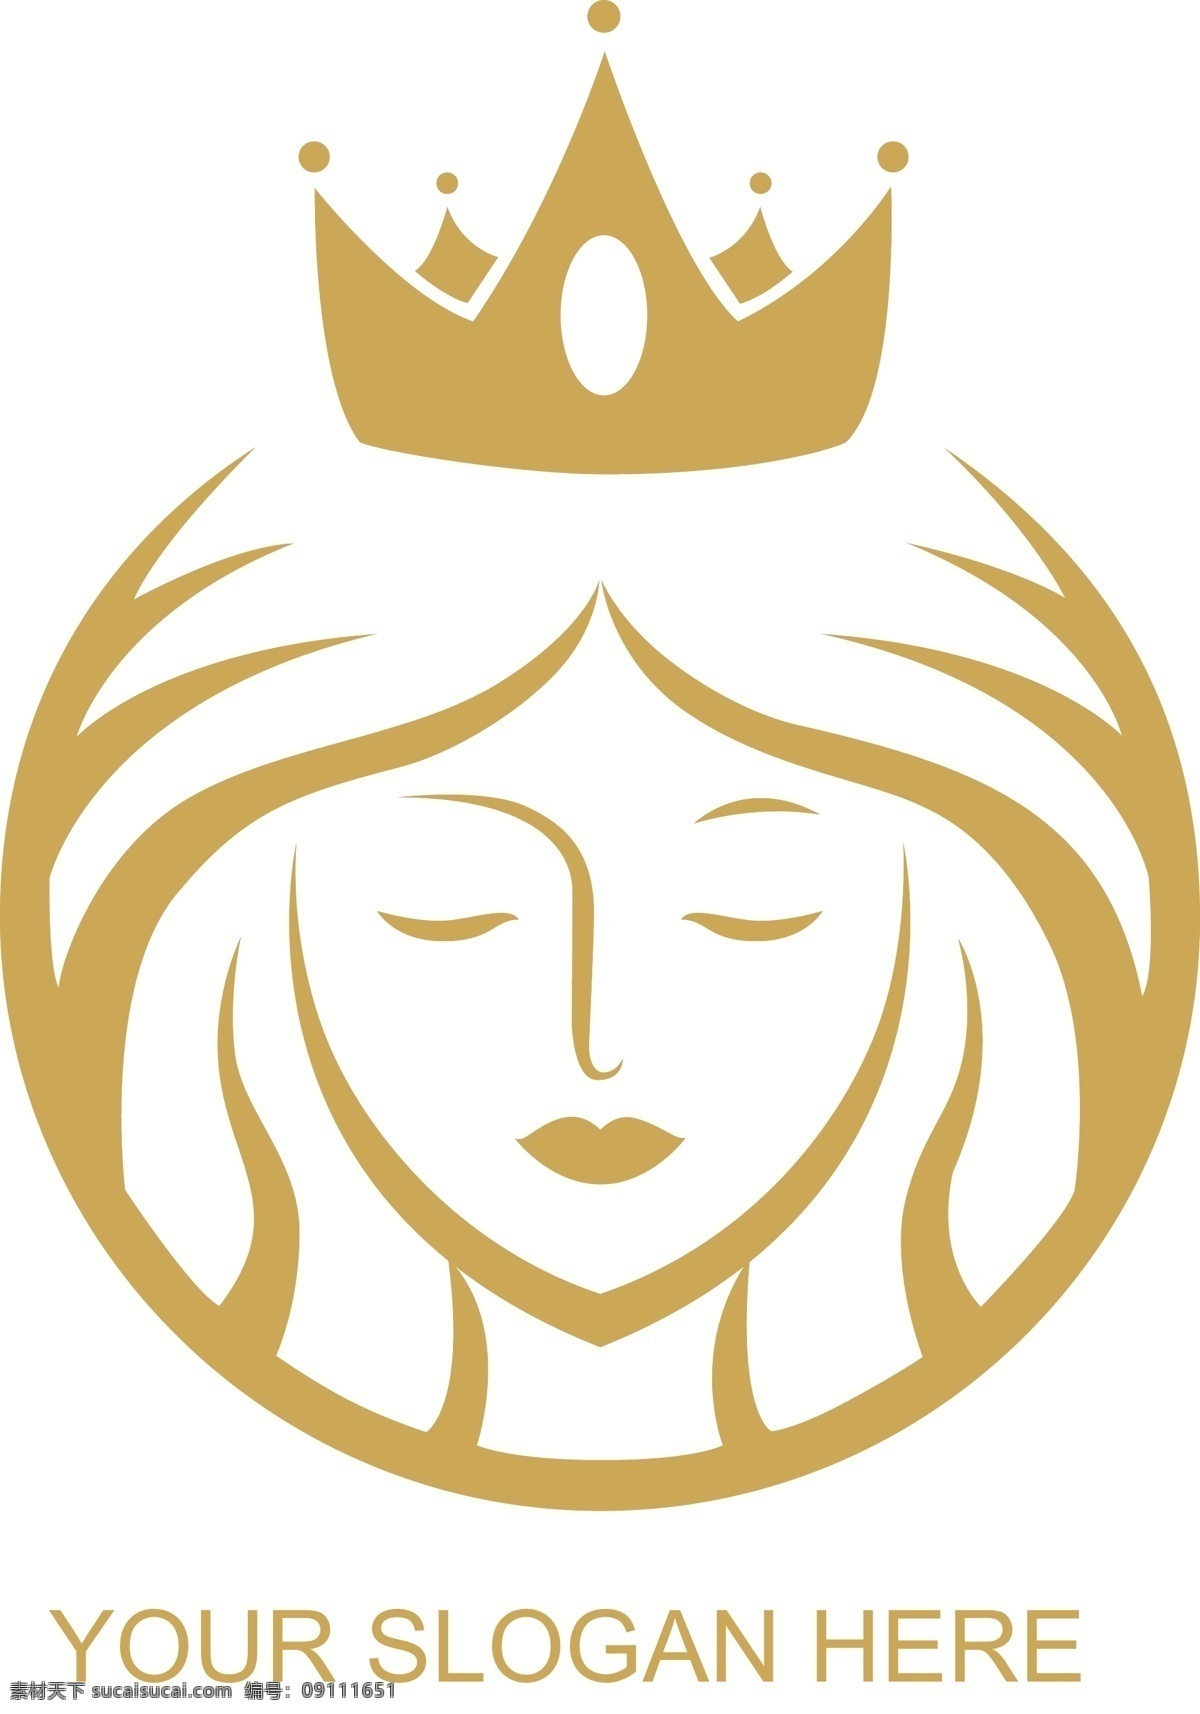 女性用品标志 女性 皇冠 美容 护肤 矢量logo logo logo设计